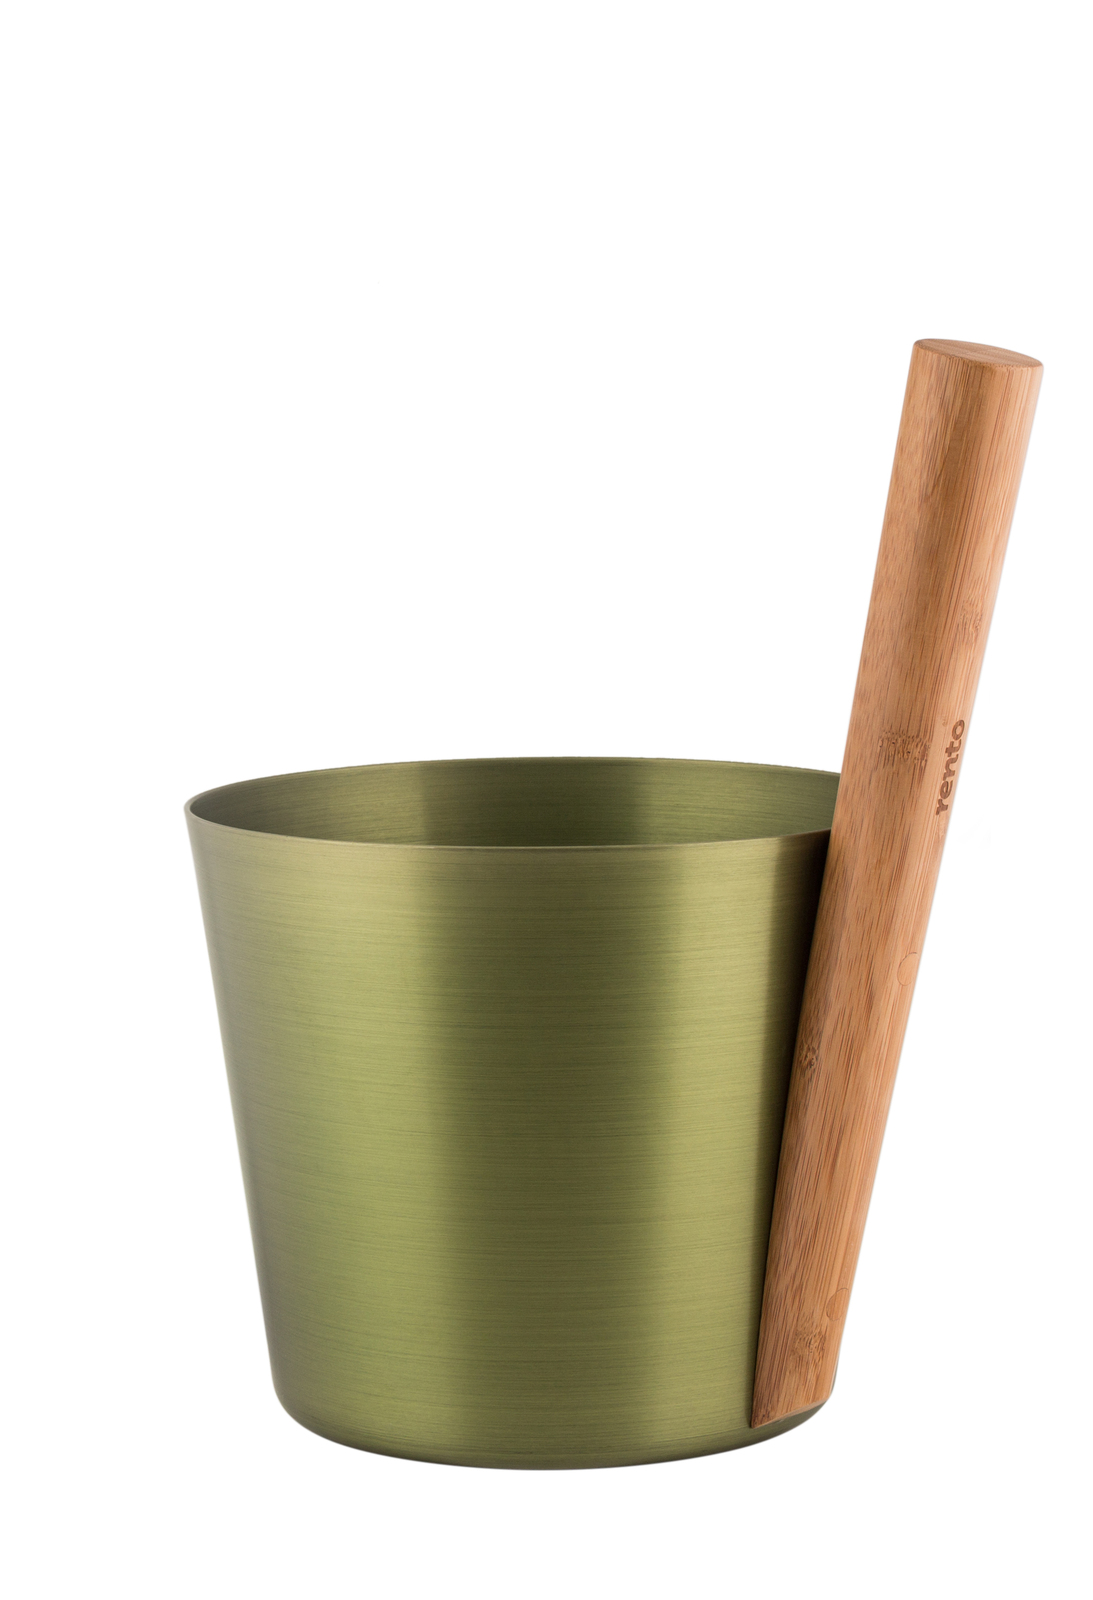 Rento Saunový kbelík barva: bronzová